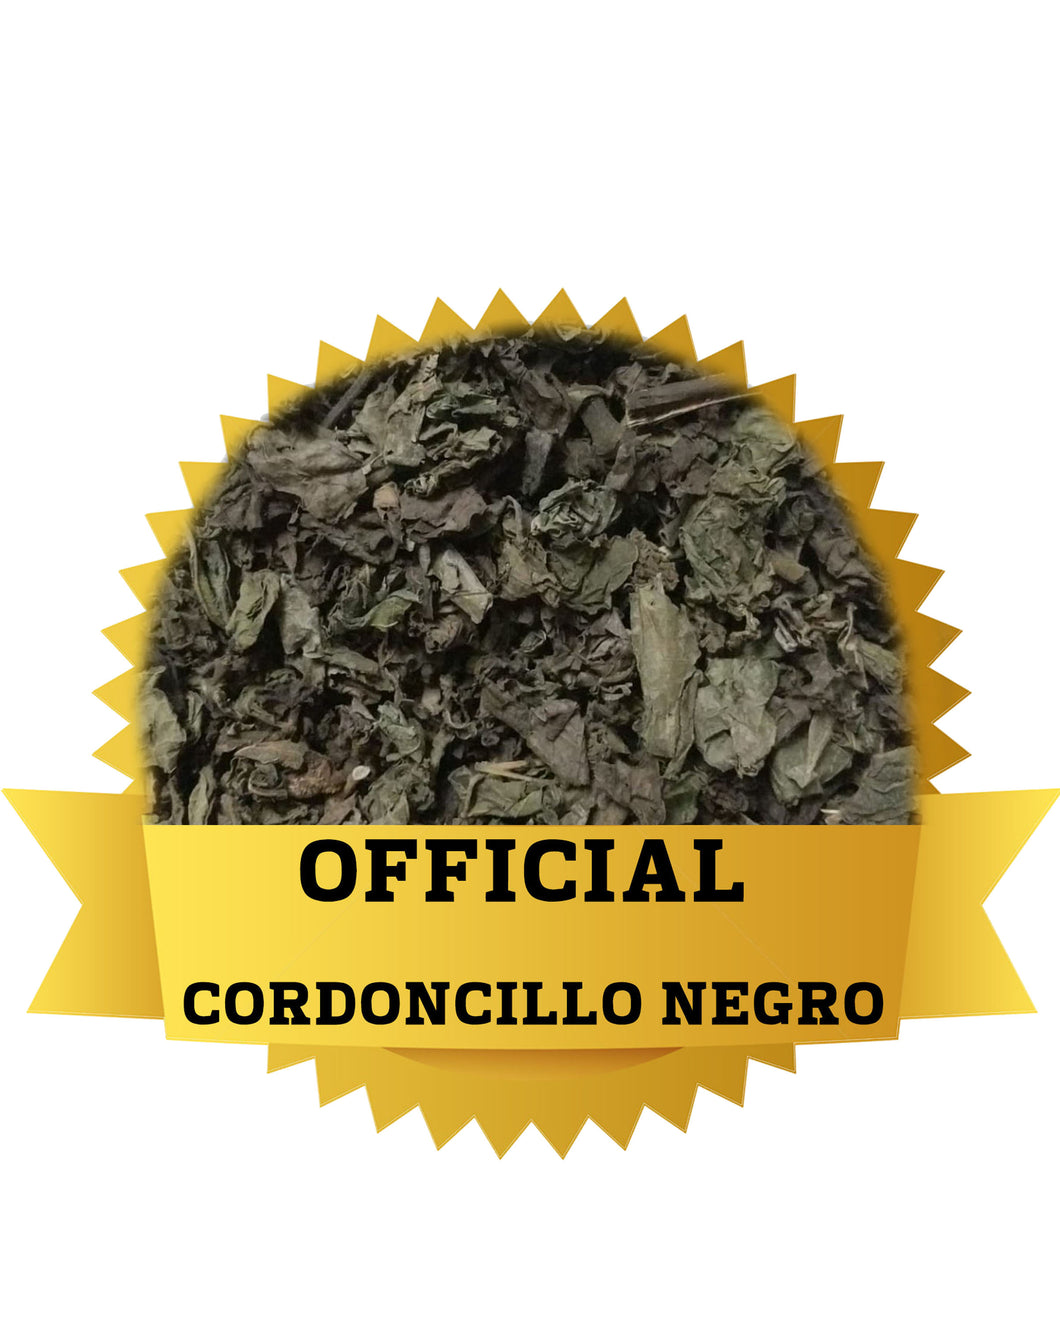 OFFICIAL CORDONCILLO NEGRO